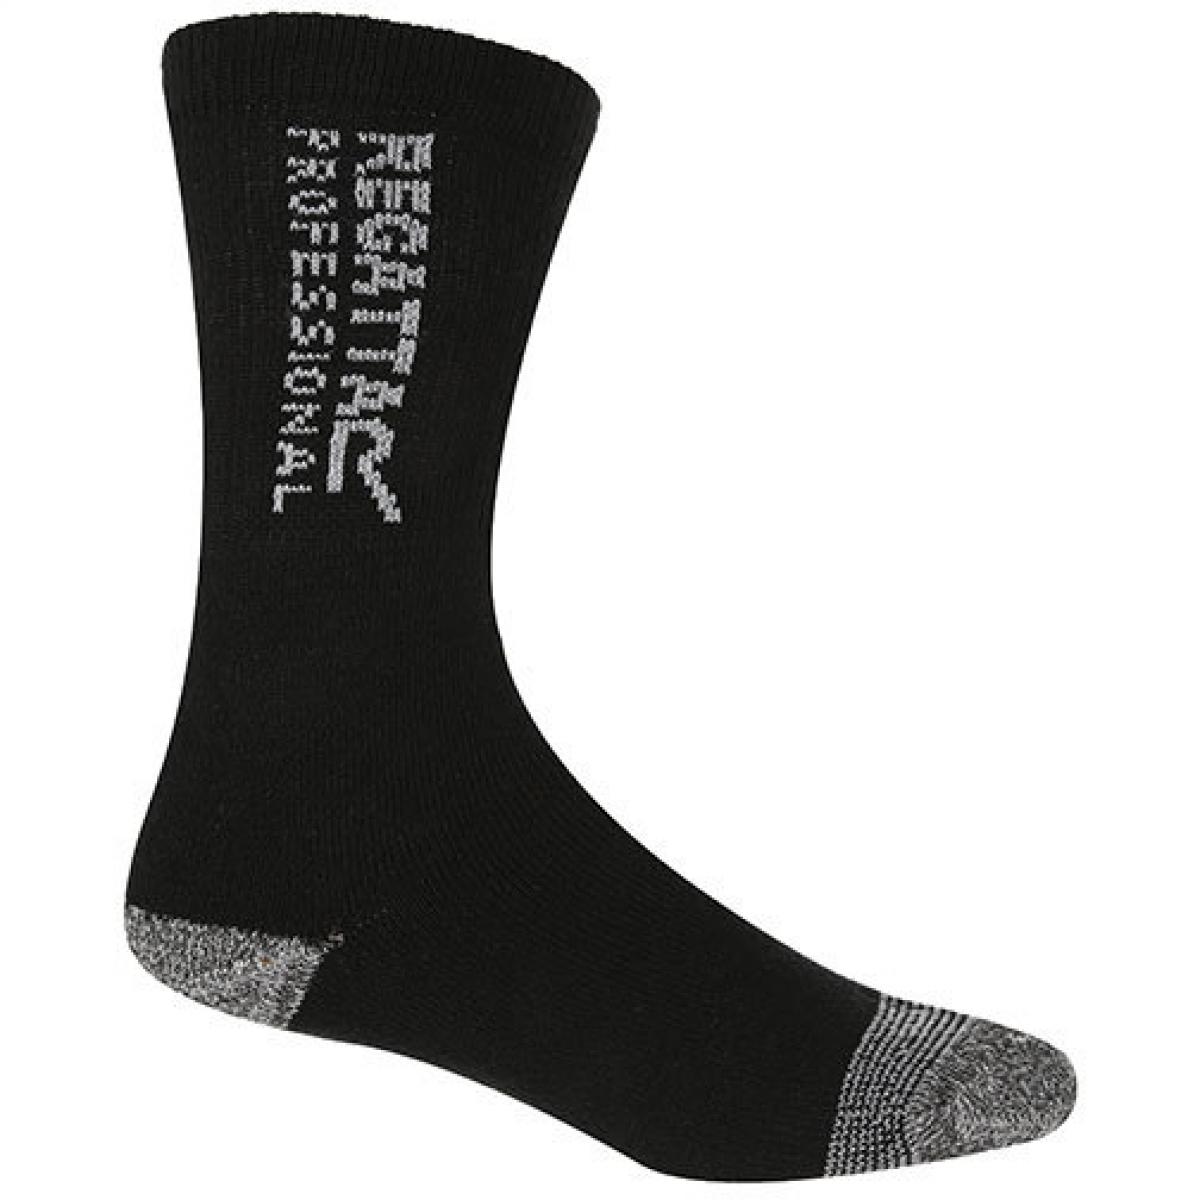 Hersteller: Regatta Hardwear Herstellernummer: RMH003 Artikelbezeichnung: Herren Arbeiter Socken 3er Pack - Workwear Socks Farbe: Black